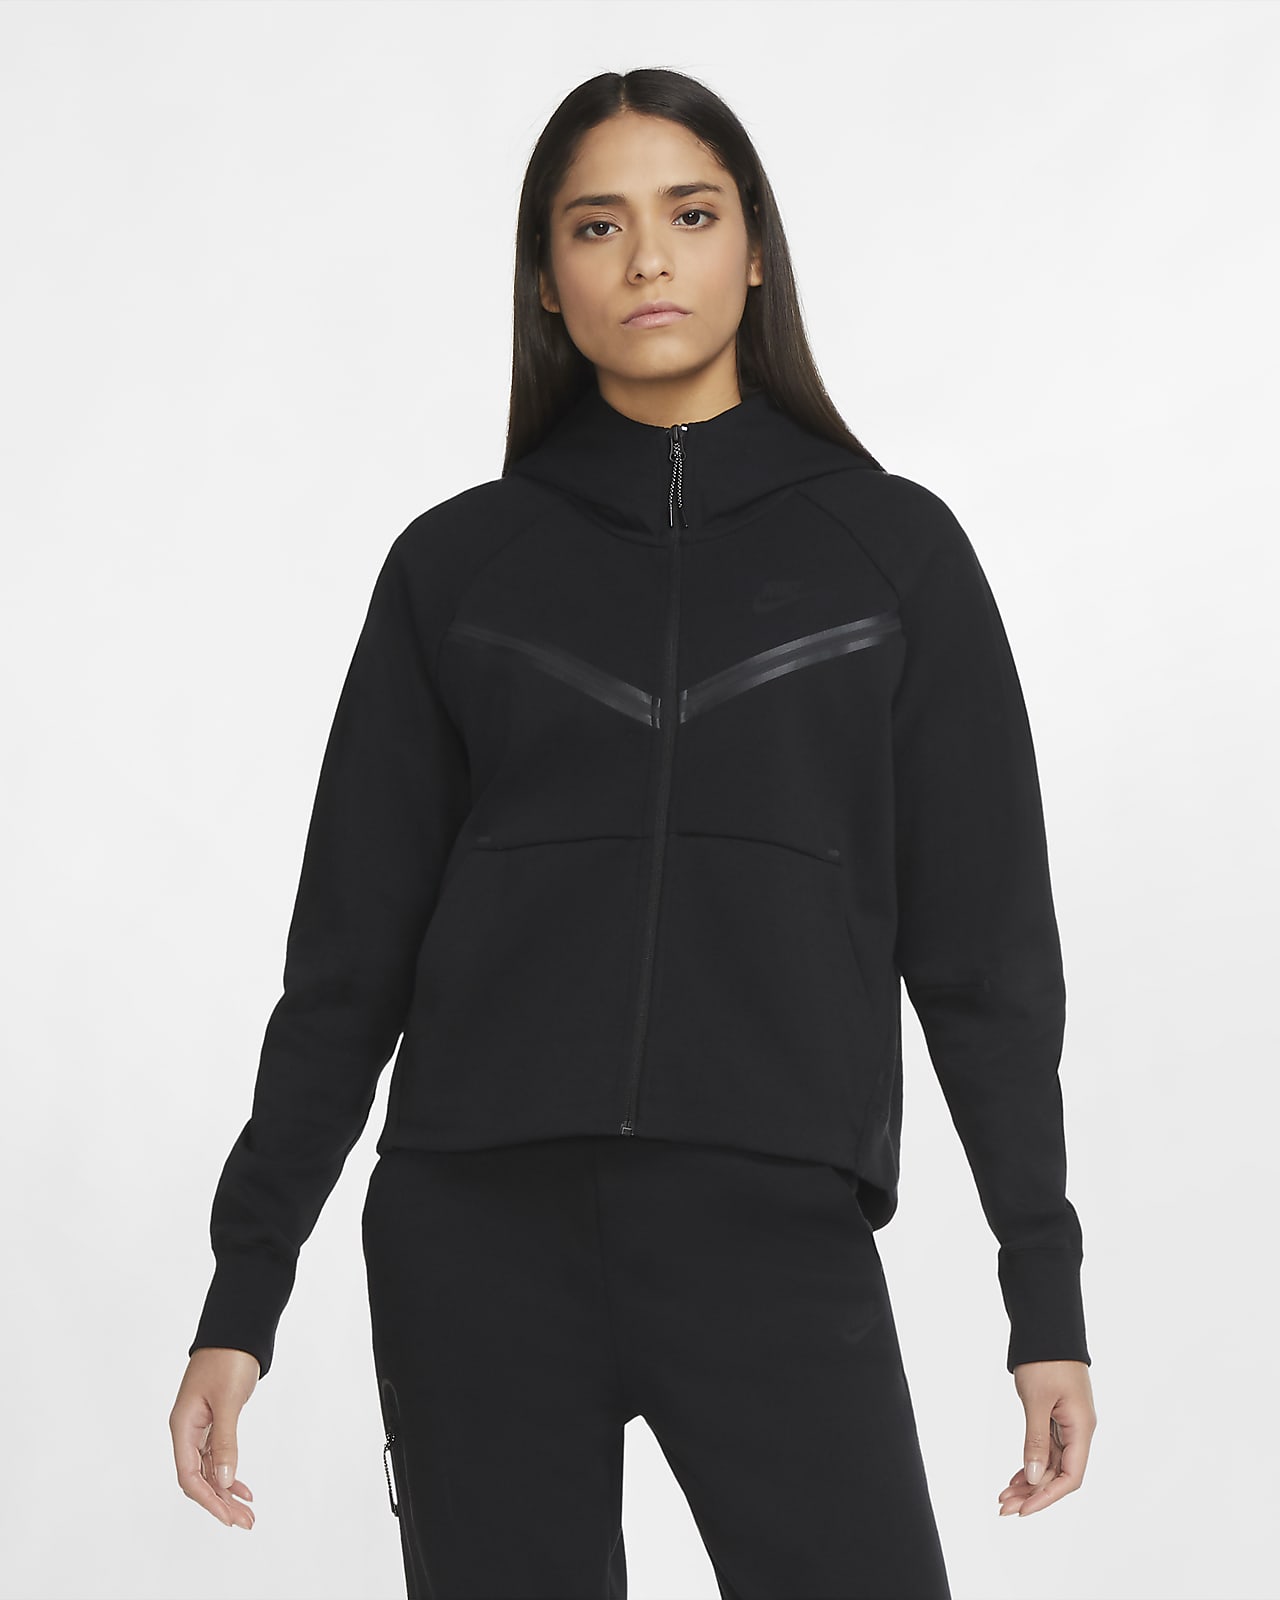 nike sportswear windrunner tech fleece sherpa hoodie